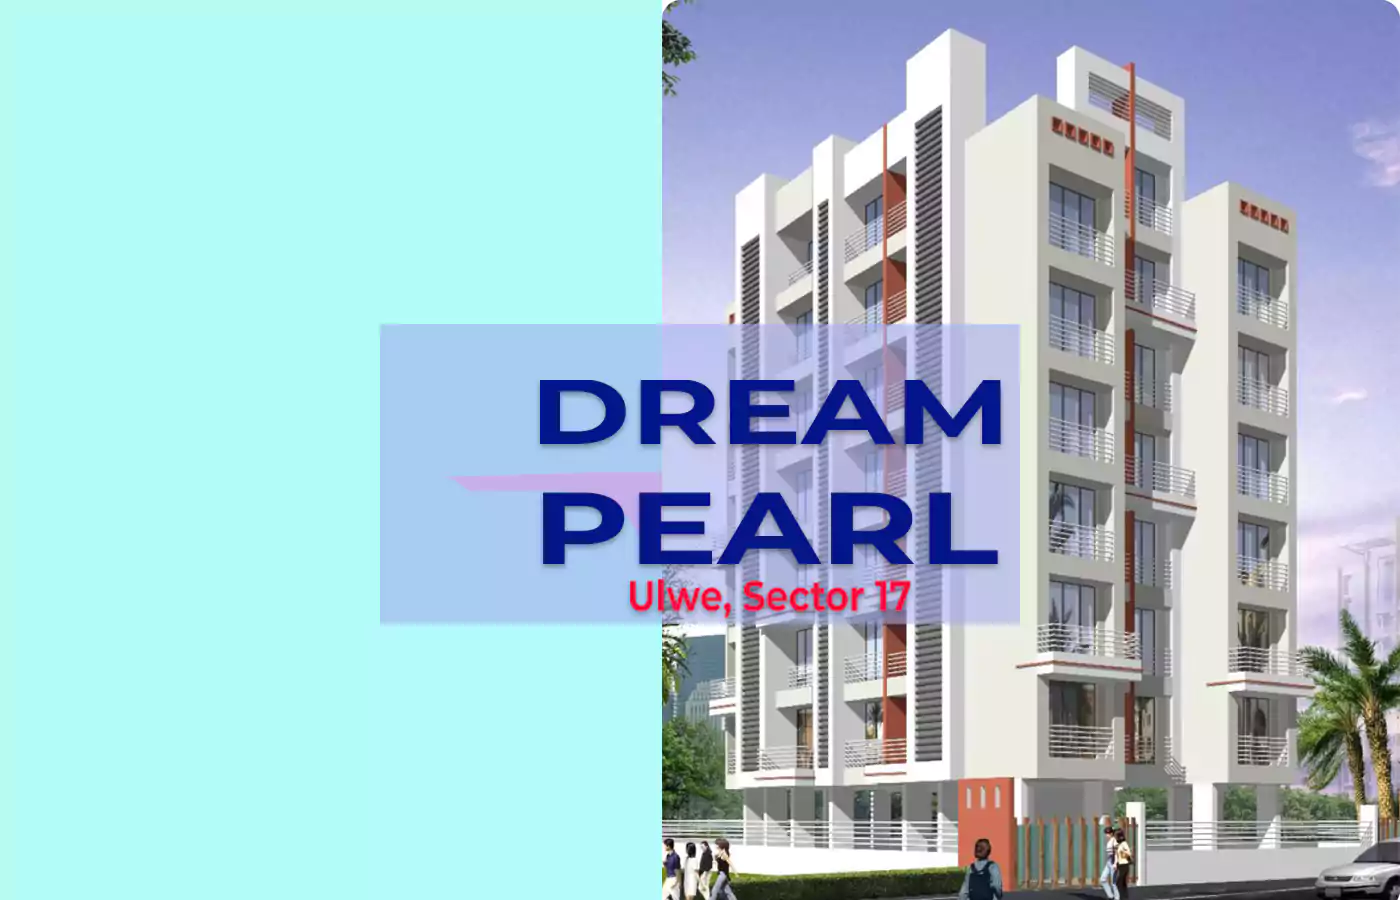 Dream Pearl Ulwe